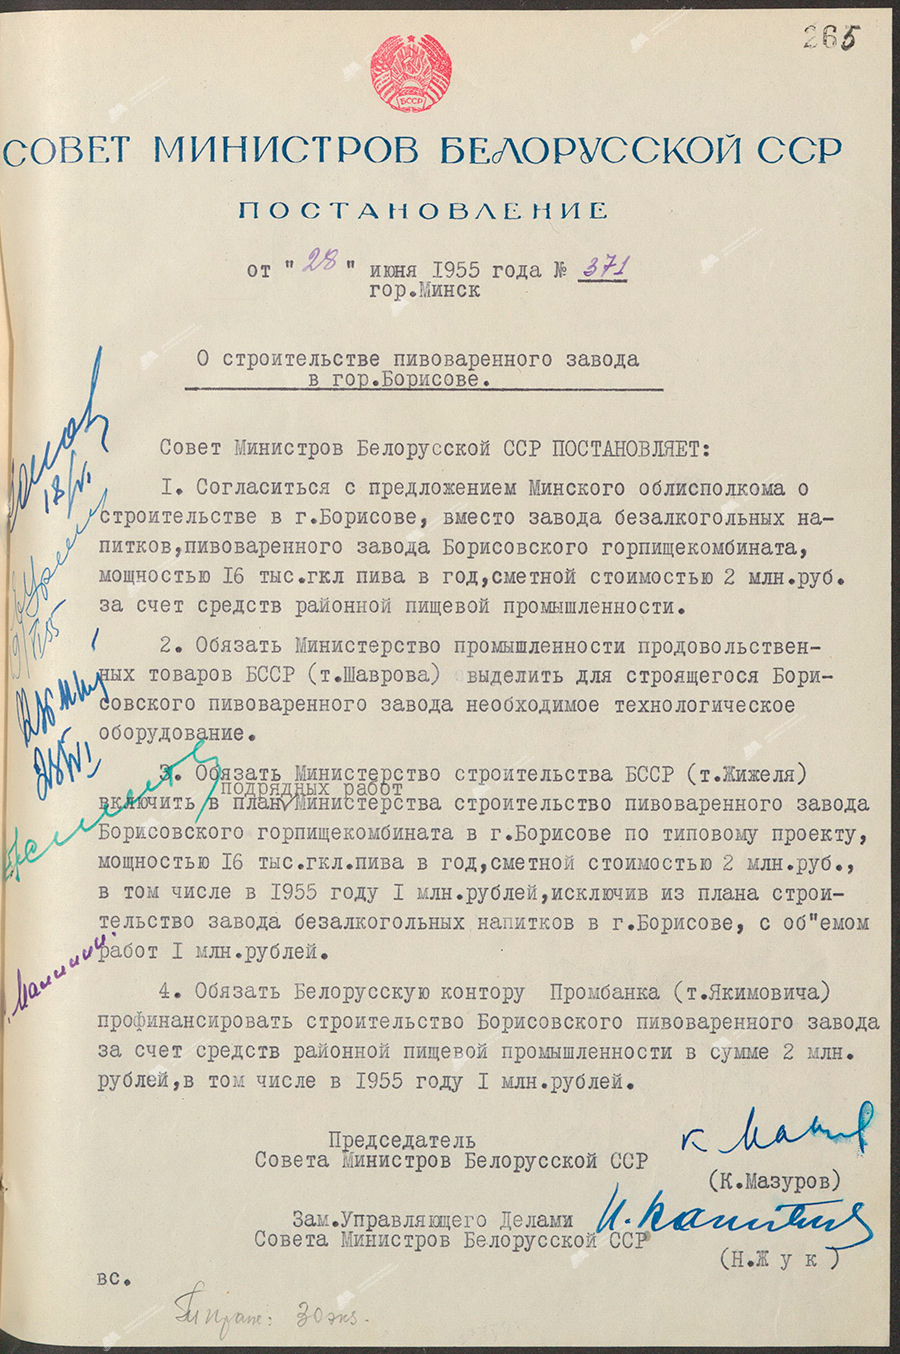 Beschluss Nr. 371 des Ministerrats der Weißrussischen SSR «Über den Bau einer Brauerei in der Stadt.» Borissow»-с. 0